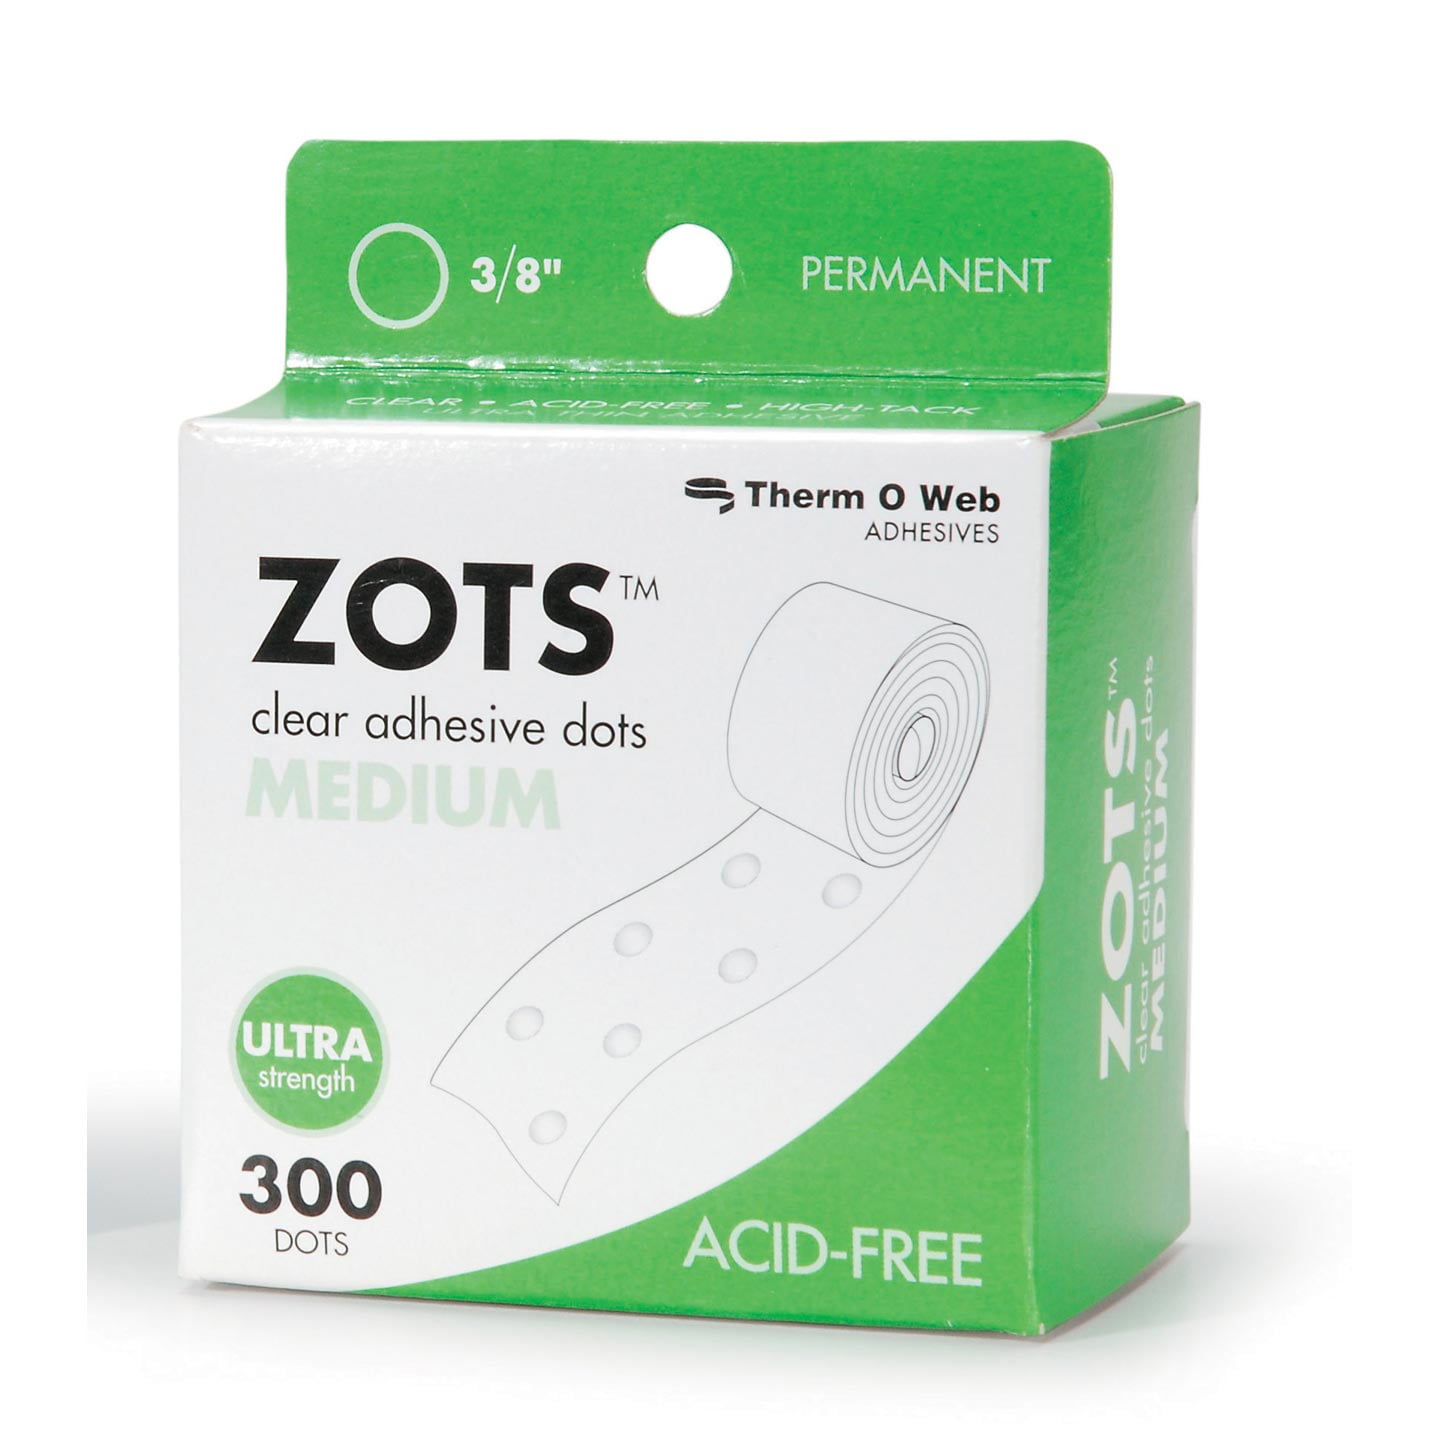 Zots Clear Adhesive Dots, Medium, 3/8 and 50 similar items